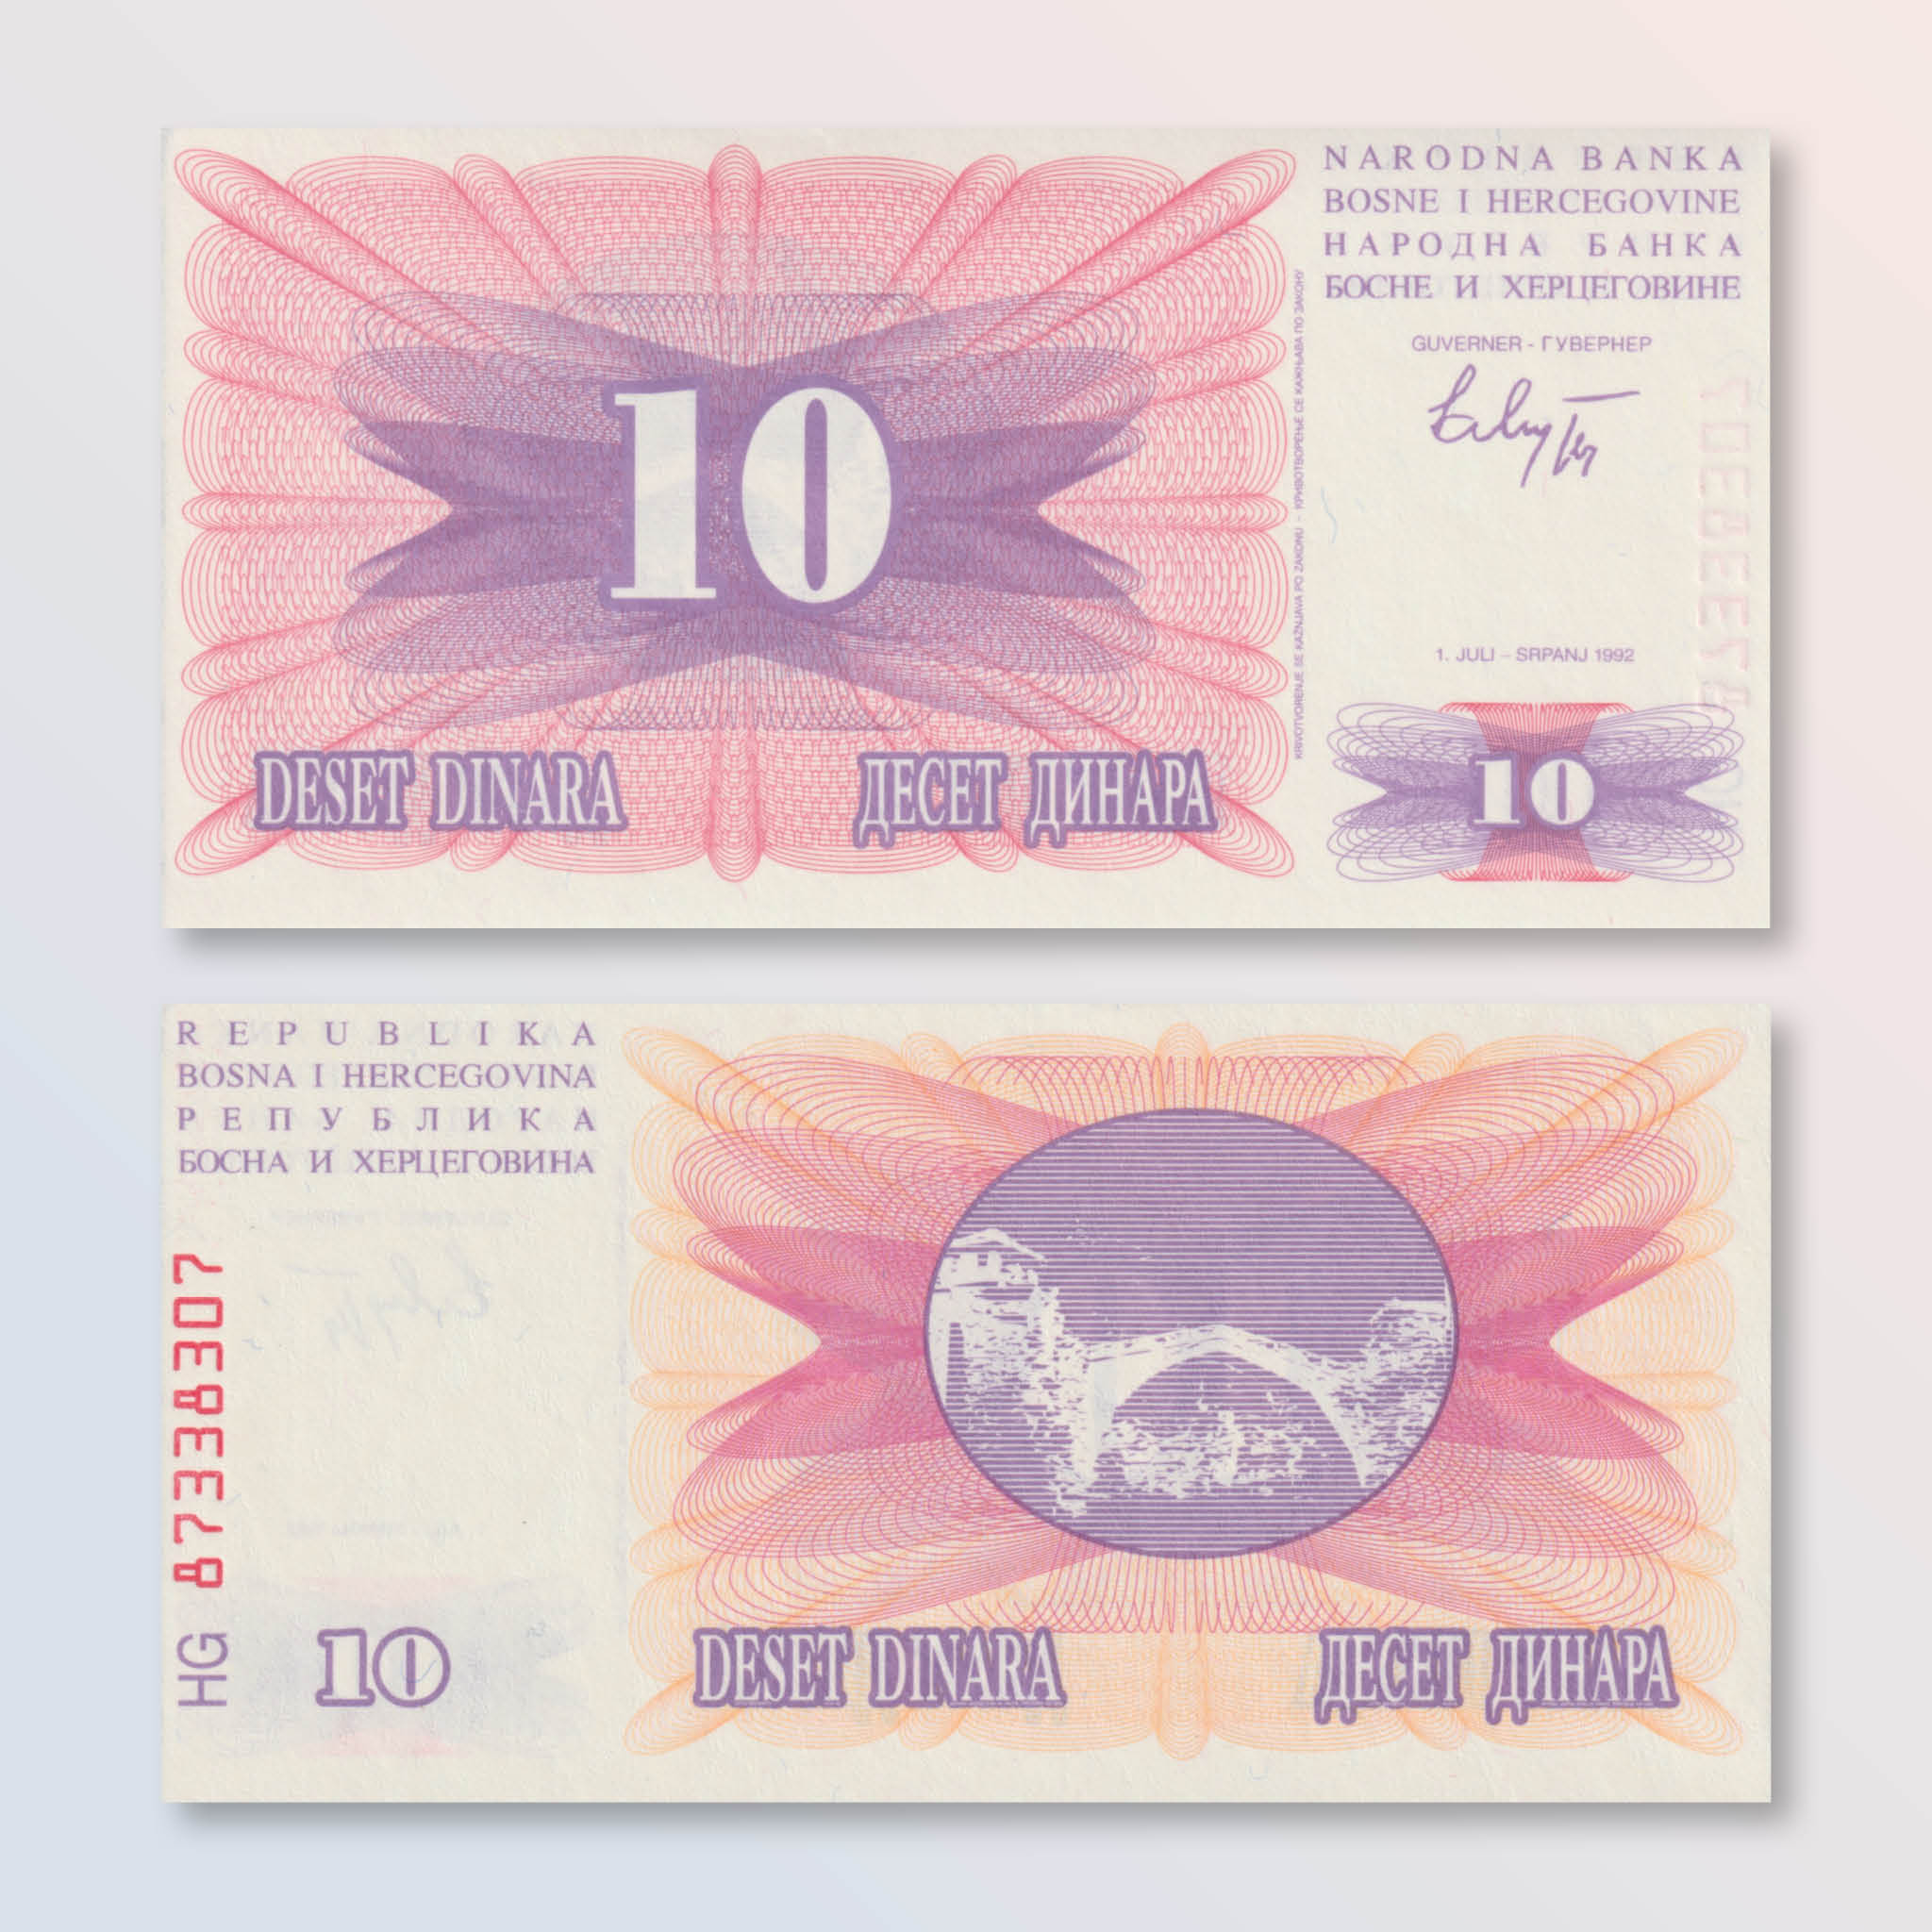 Bosnia 10 Dinars, 1992, B113a, P10a, UNC - Robert's World Money - World Banknotes